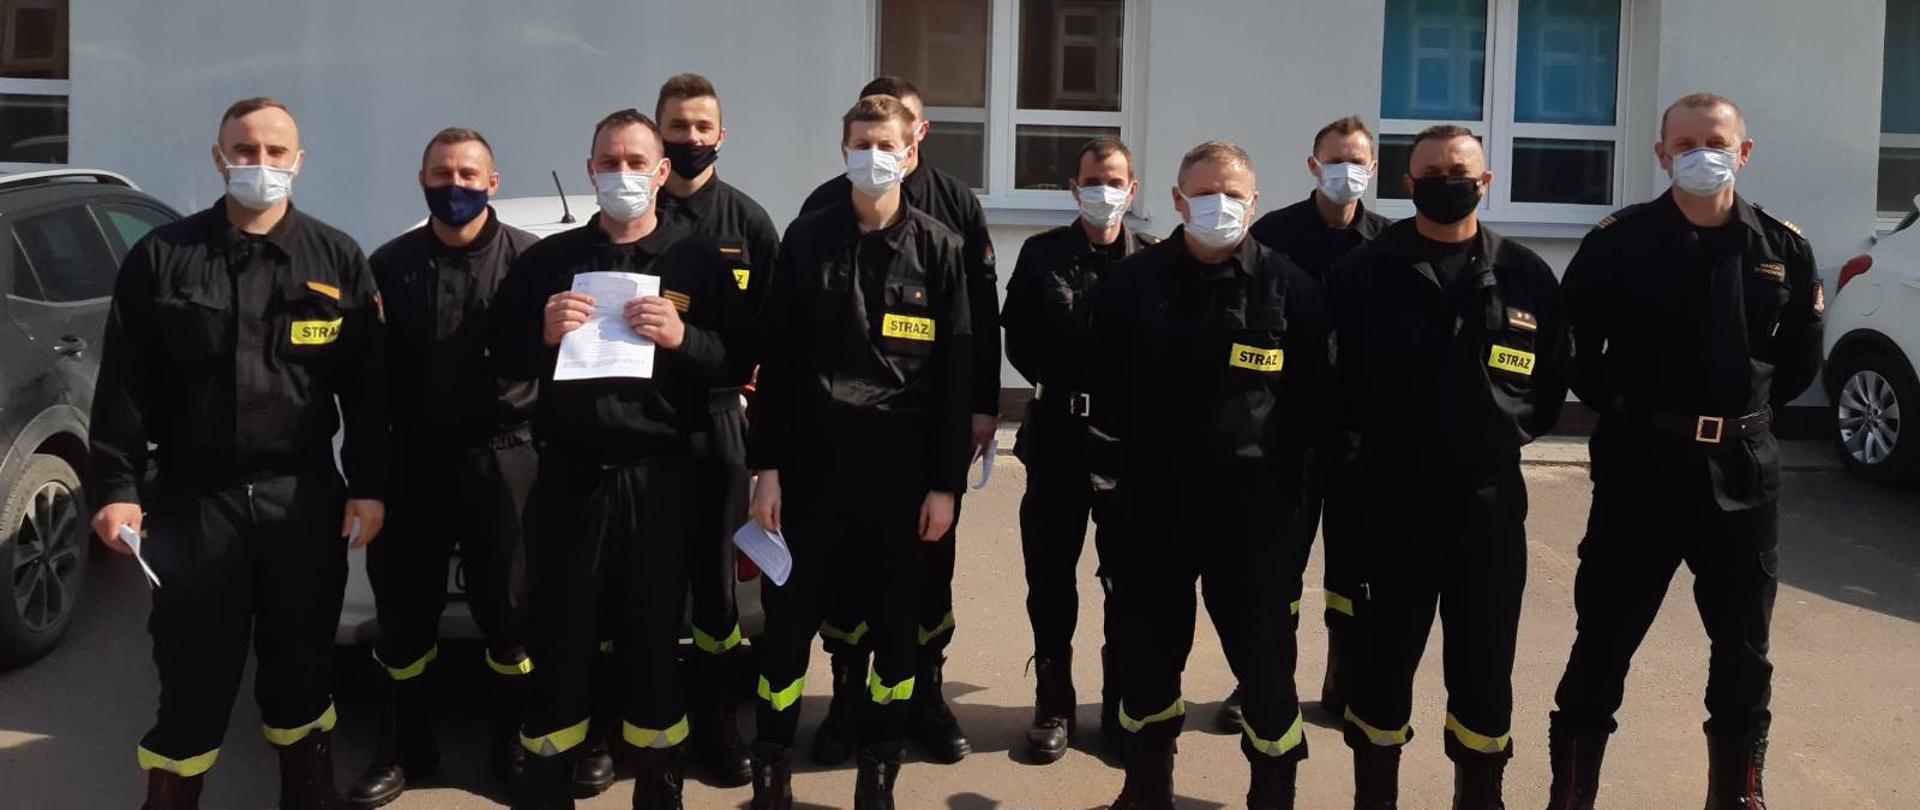 Kolejny etap szczepień lipnowskich strażaków #SzczepimySię.